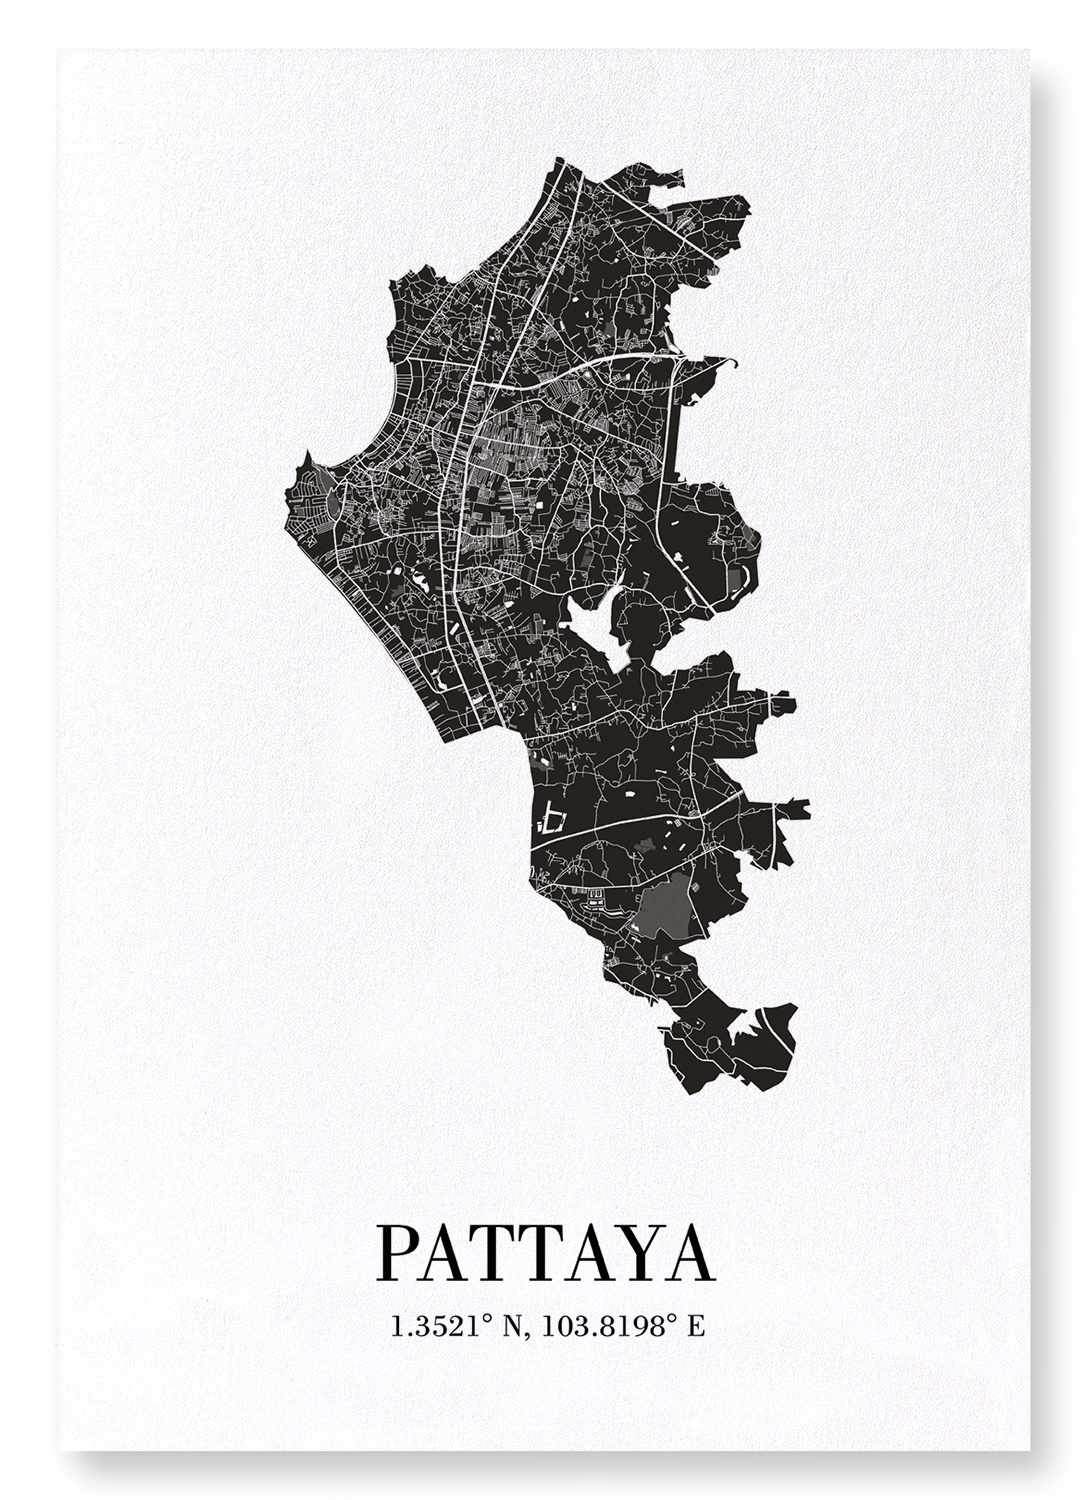 PATTAYA CUTOUT: Map Cutout Art Print